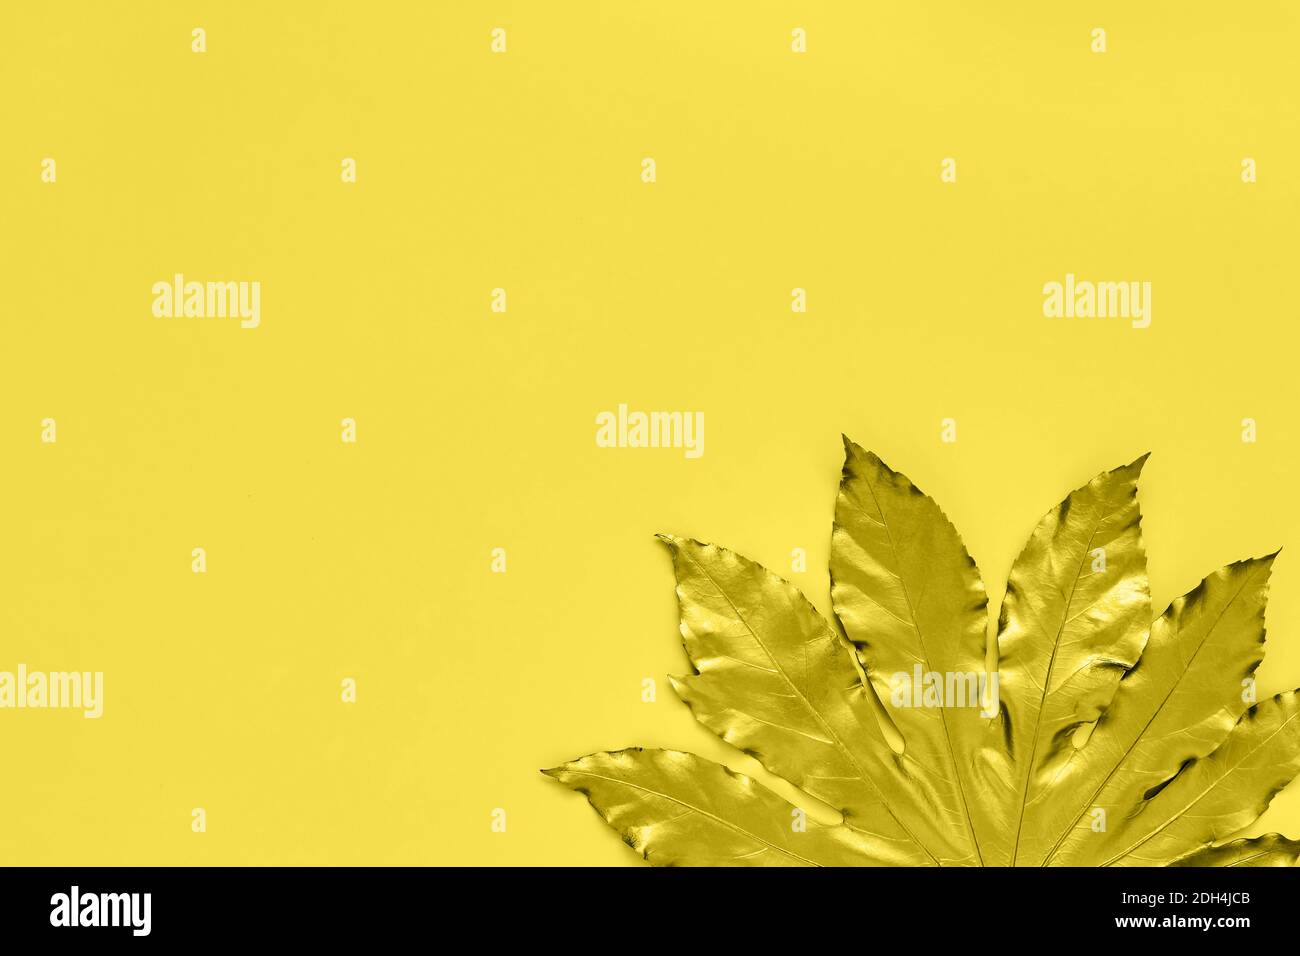 Foglia tropicale dorata su sfondo giallo. Il concetto esotico autunnale minimo con spazio di copia. Spazio di copia, vista dall'alto. Immagine a toni, a colori 2021 Foto Stock